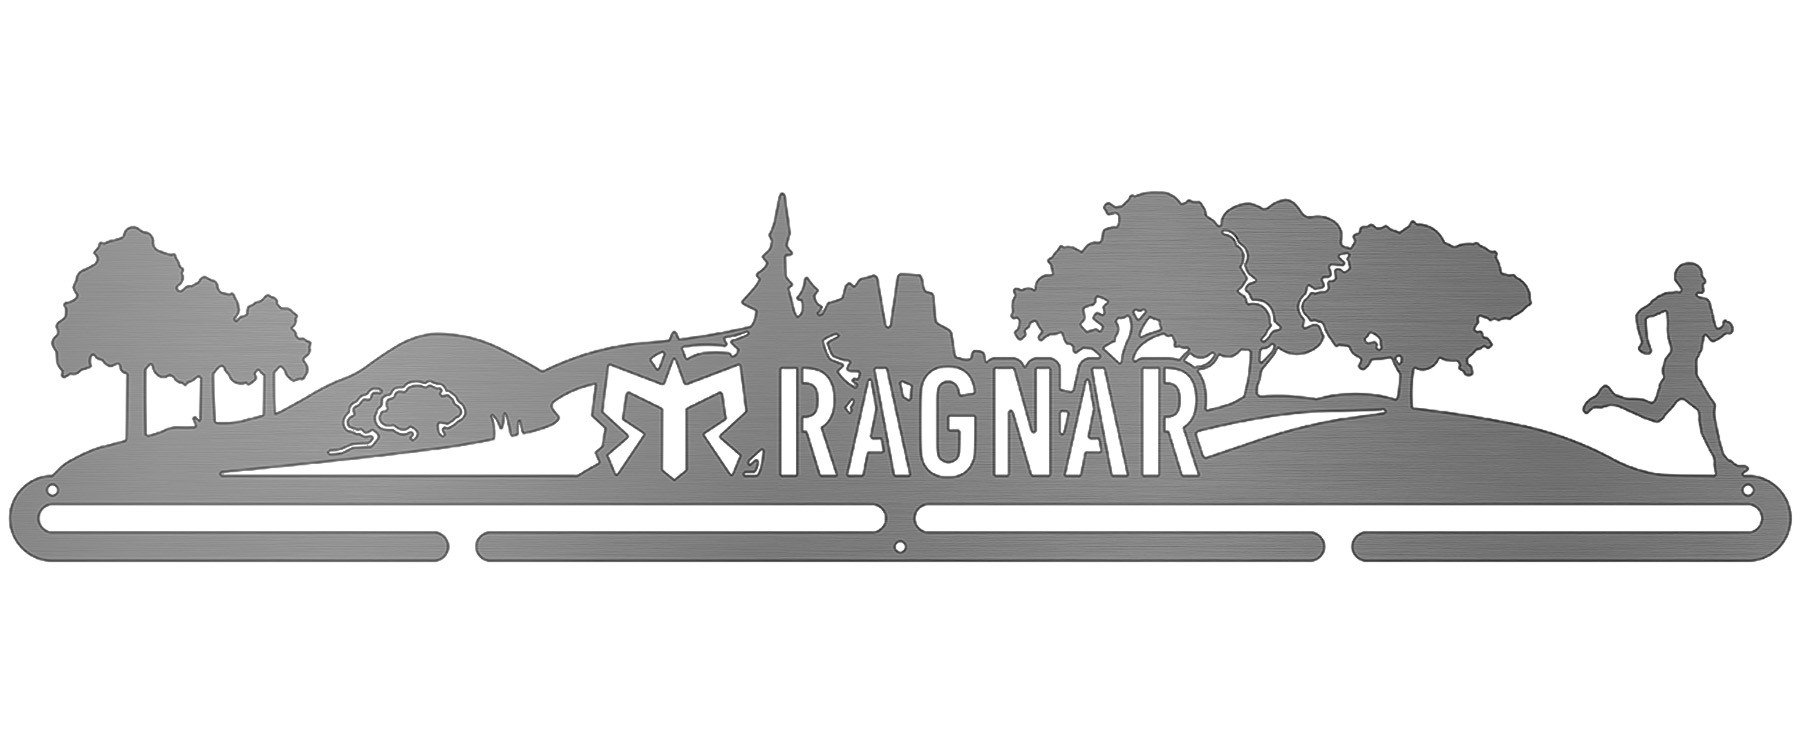 Ragnar Trailscape - Male